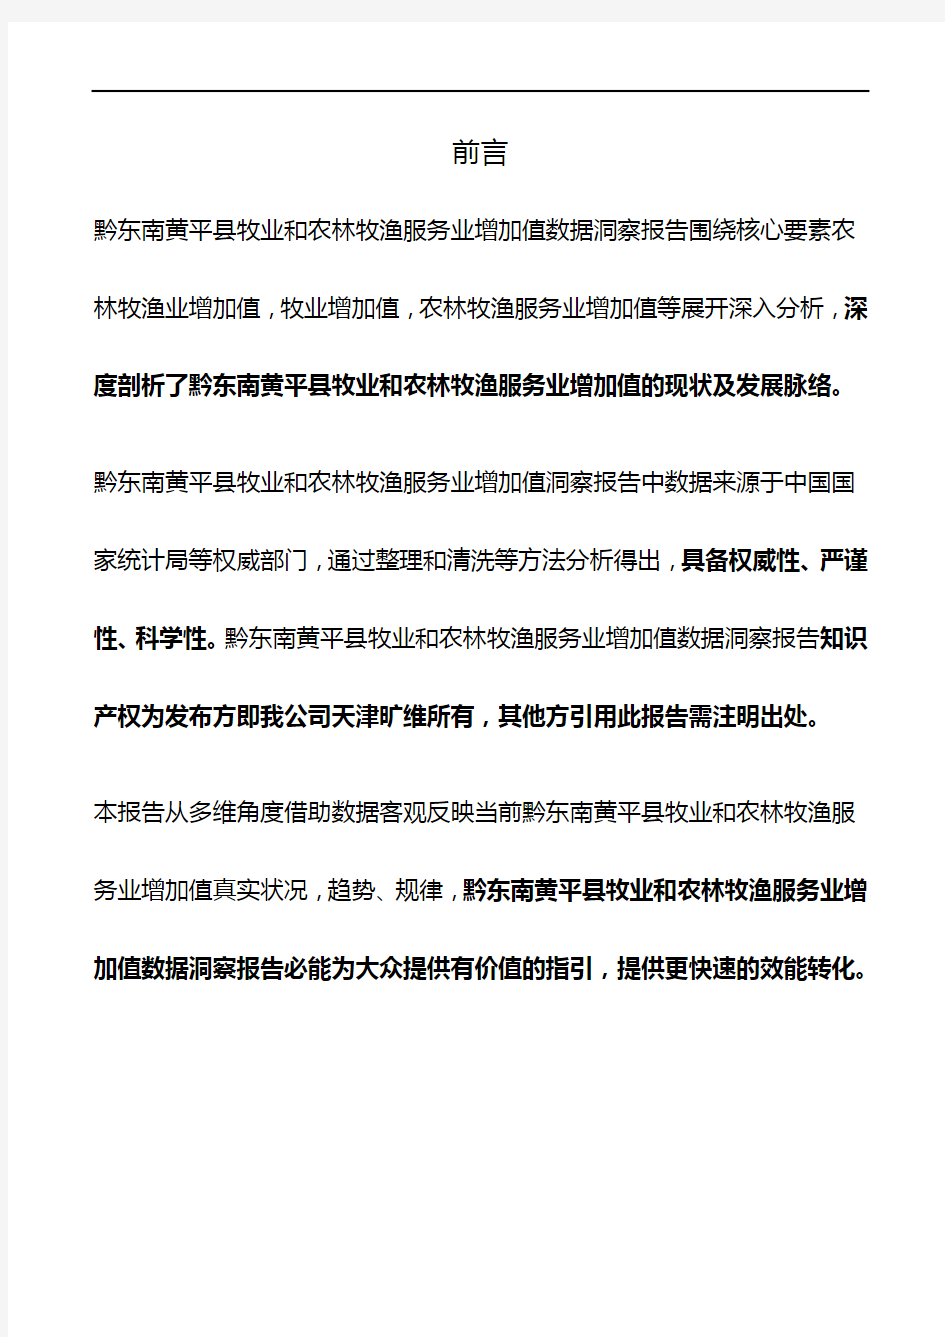 贵州省黔东南黄平县牧业和农林牧渔服务业增加值3年数据洞察报告2020版